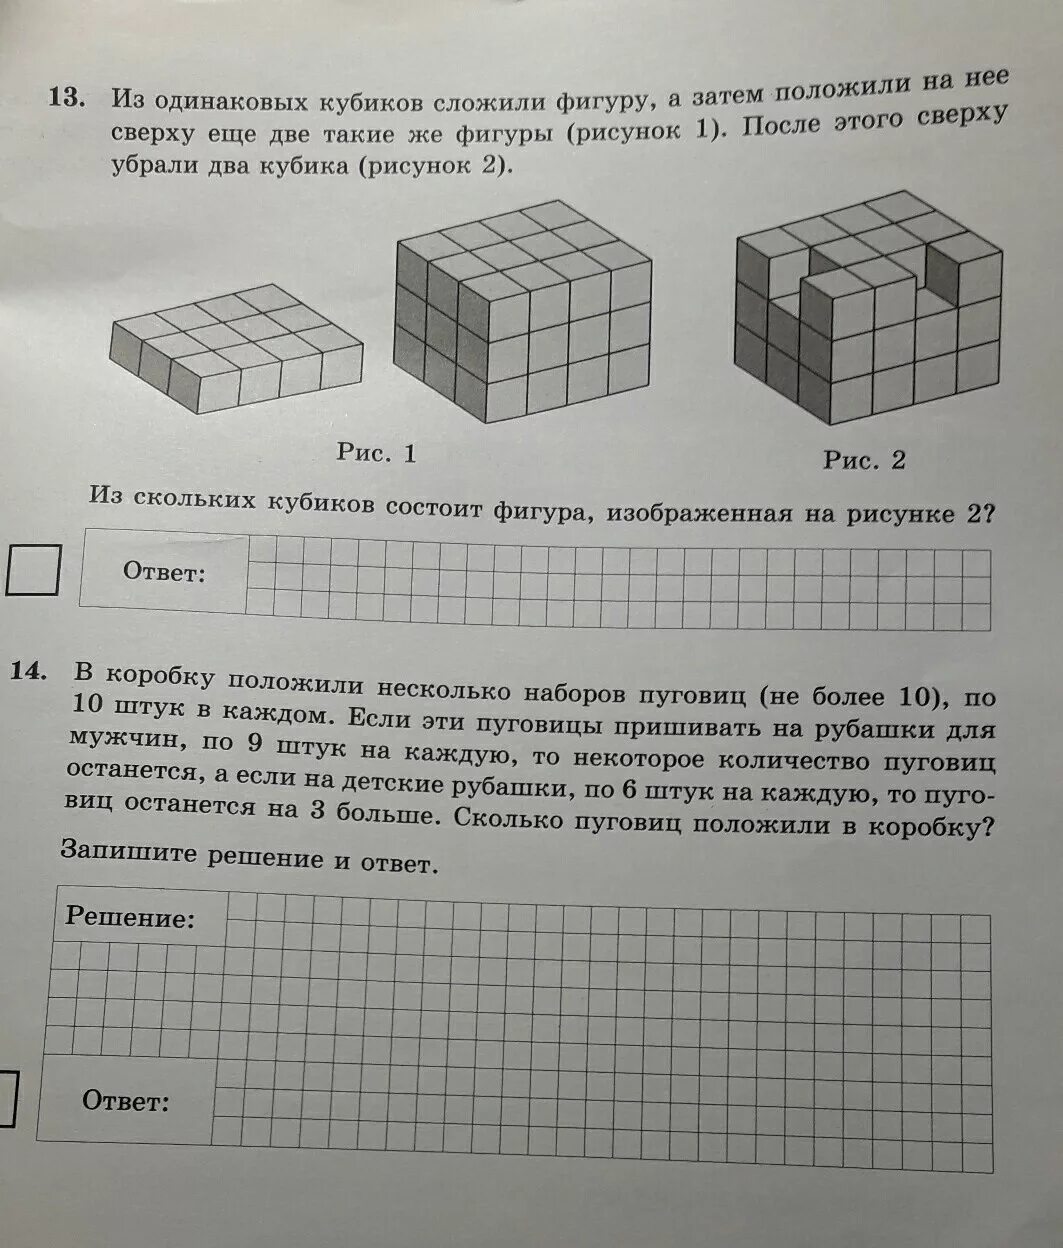 Сколько кубиков осталось в фигуре. Из одинаковых кубиков. Фигуры из одинаковых кубиков. Из одинаковых кубиков сложили фигуру. Фигуры составленные из одинаковых кубиков.